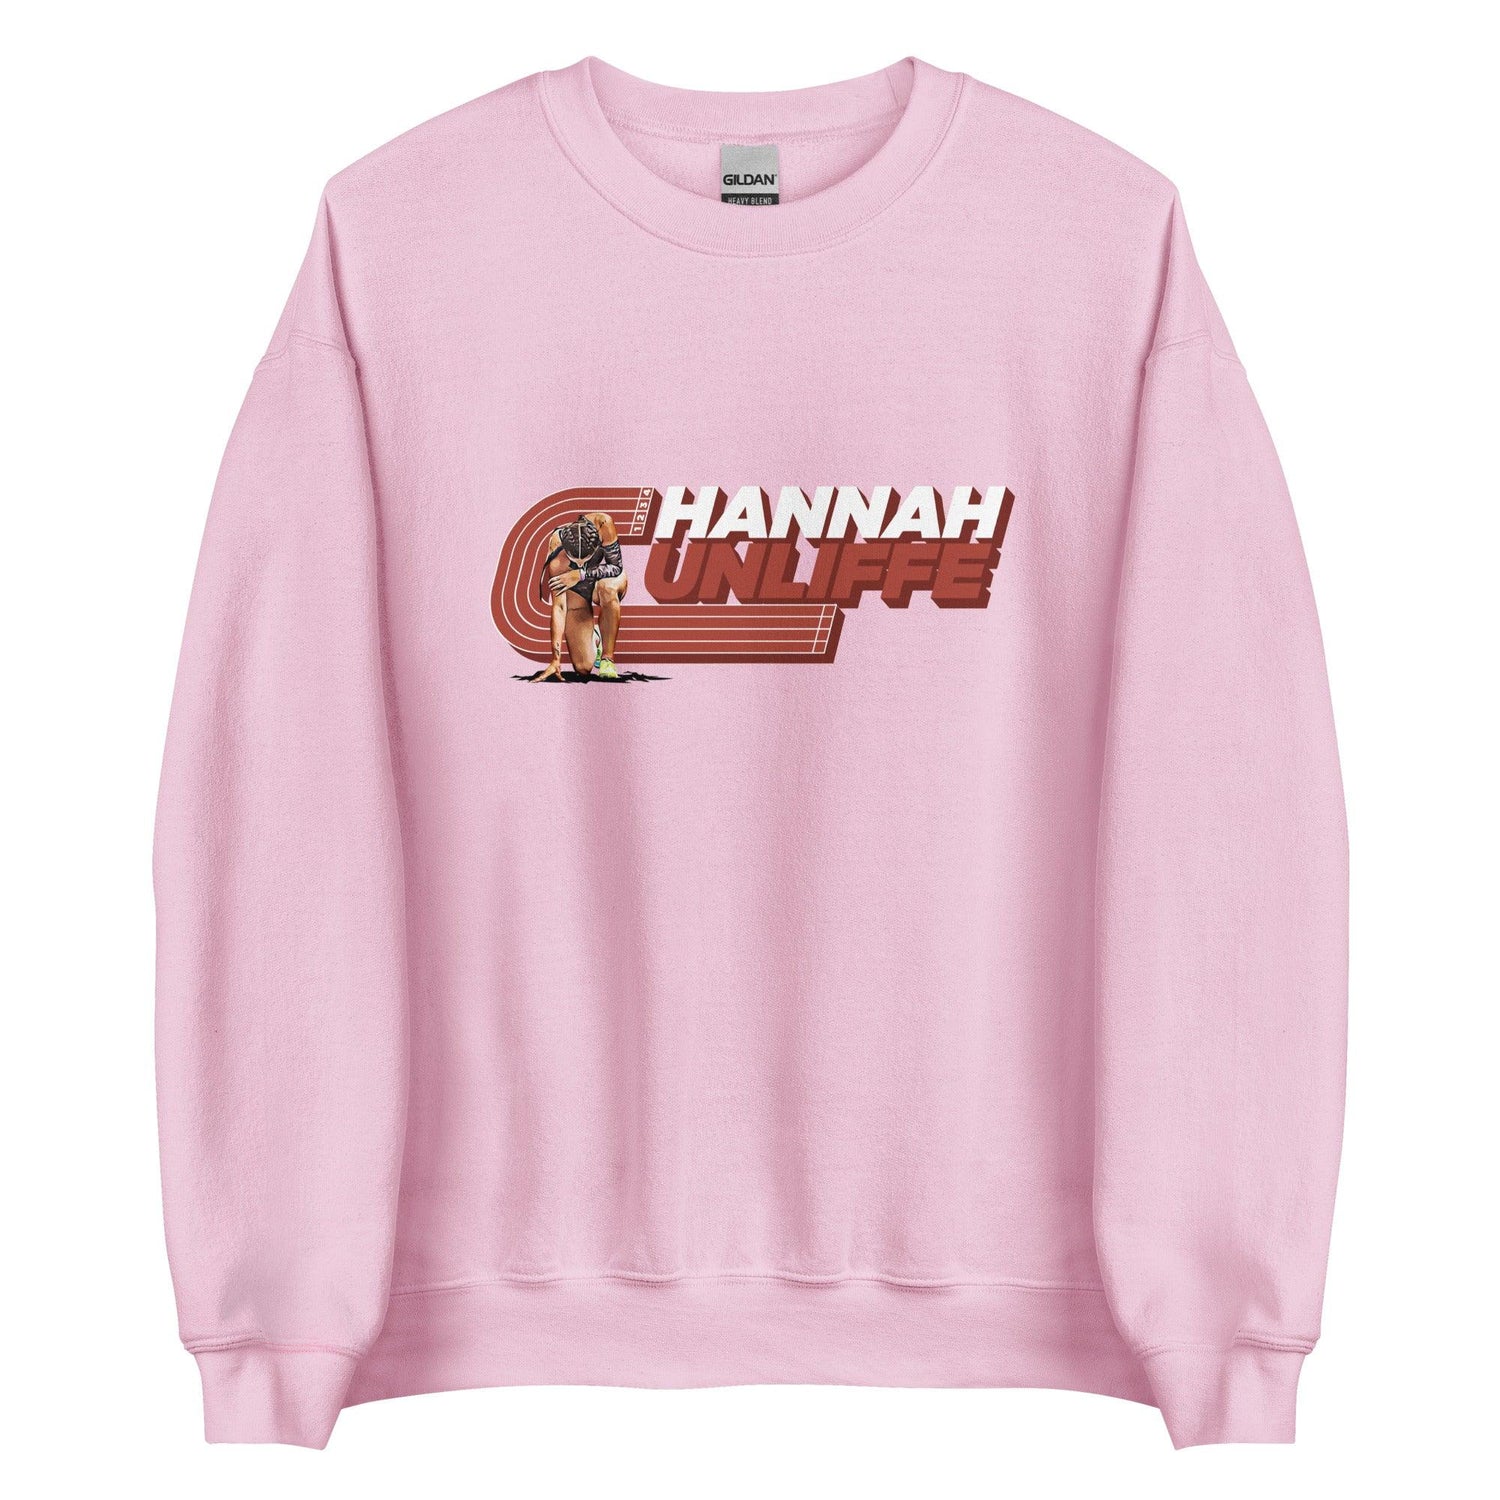 Hannah Cunliffe "Essential" Sweatshirt - Fan Arch